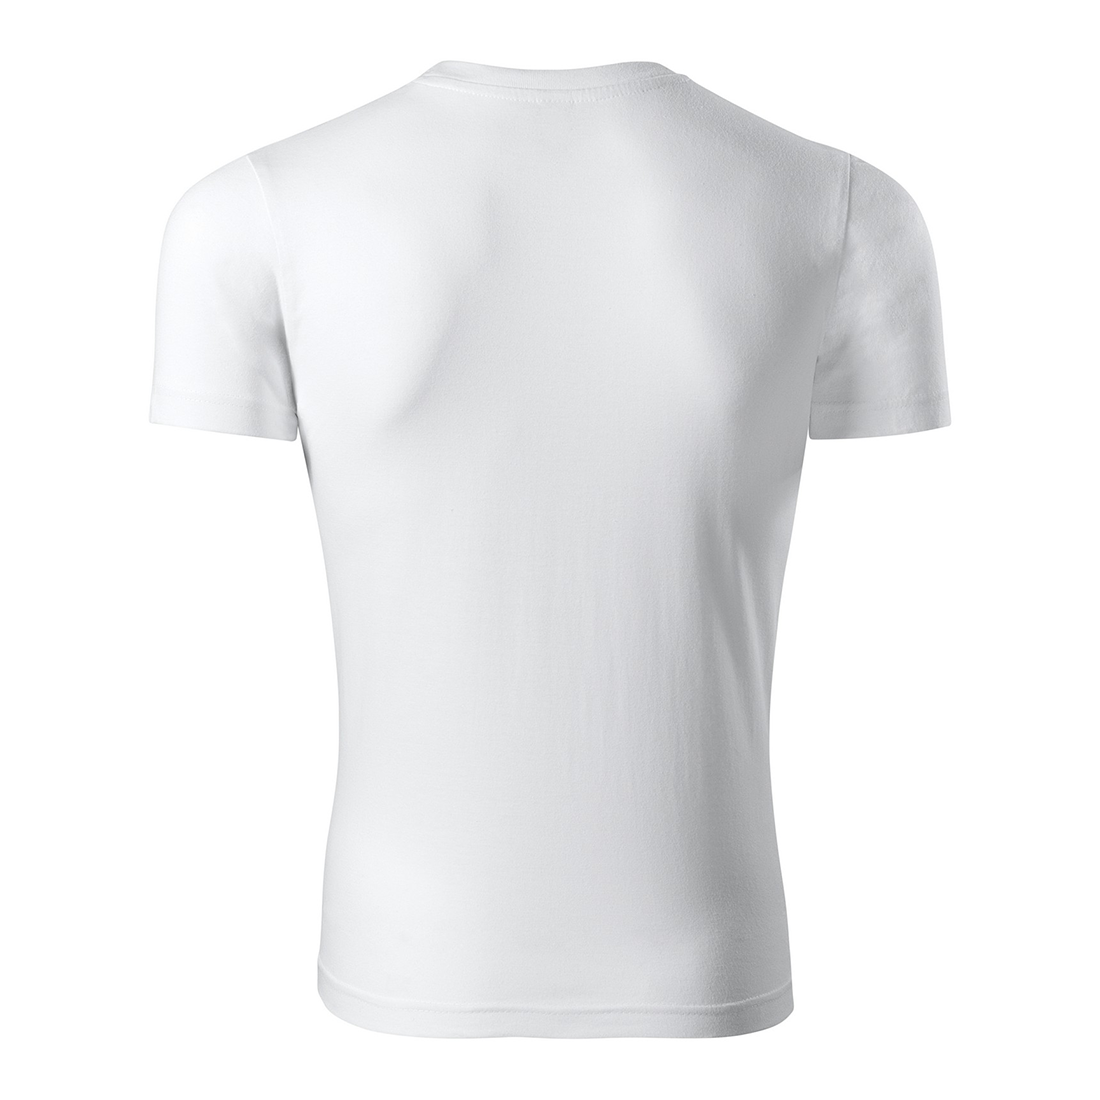 Unisex Cotton T-shirt - Safetywear